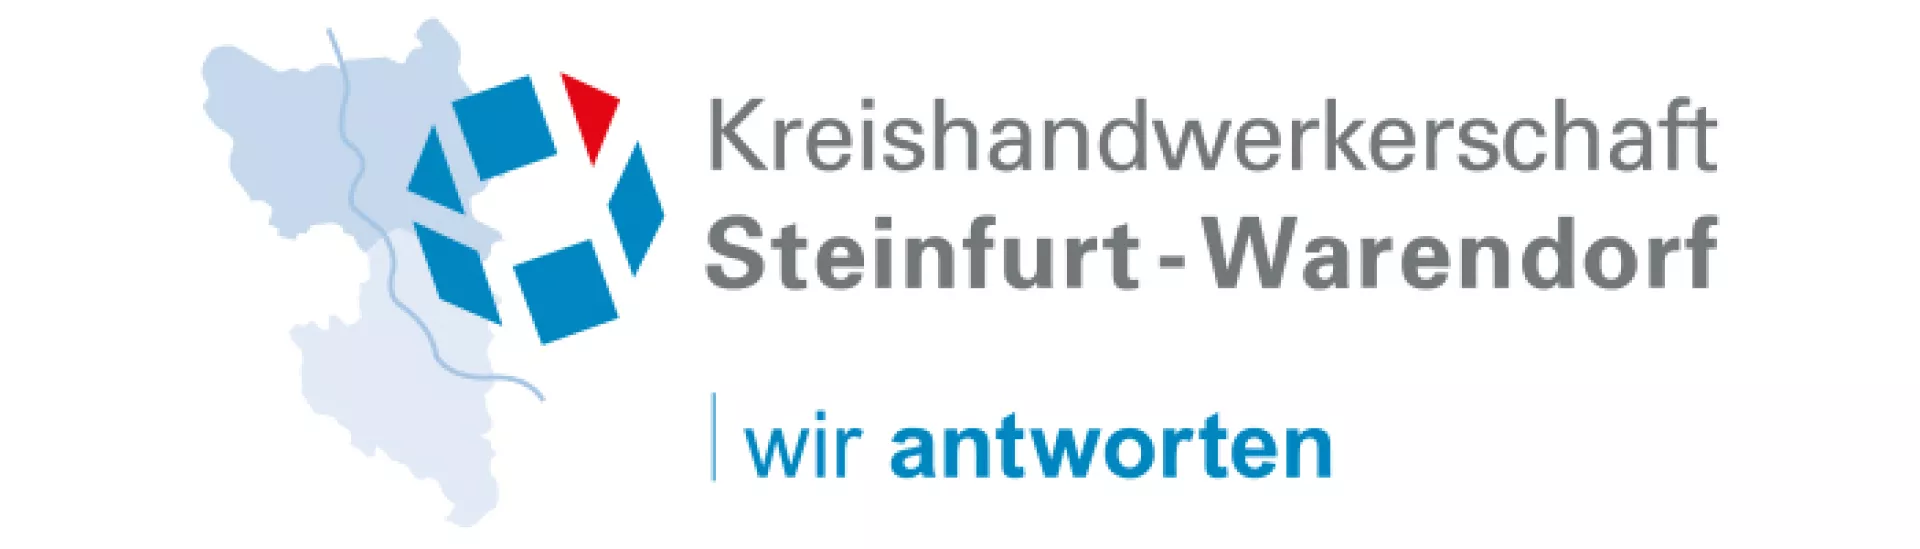 Kreishandwerkerschaft Steinfurt/Warendorf